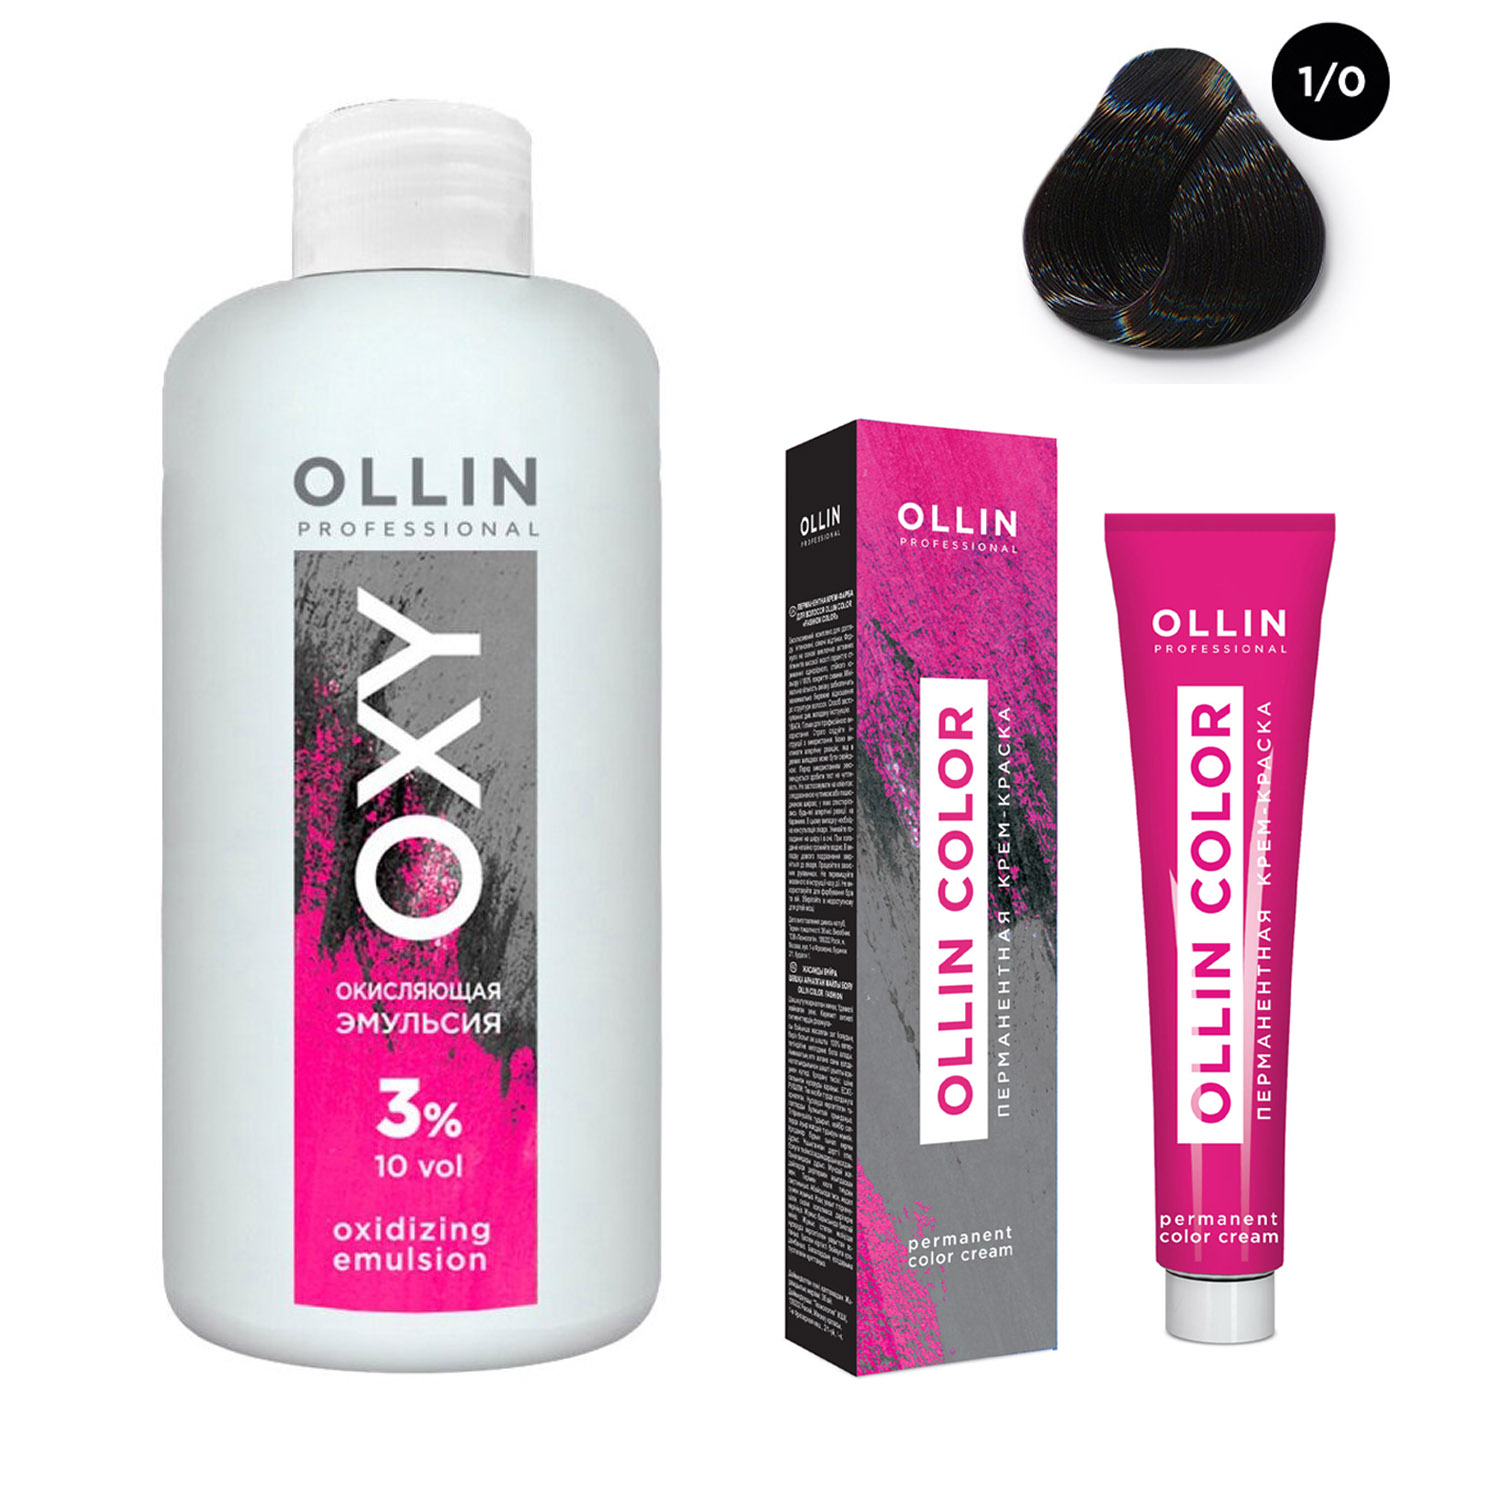 Ollin Professional Набор Перманентная крем-краска для волос Ollin Color оттенок 1/0 иссиня-черный 100 мл + Окисляющая эмульсия Oxy 3% 150 мл (Ollin Professional, Ollin Color)